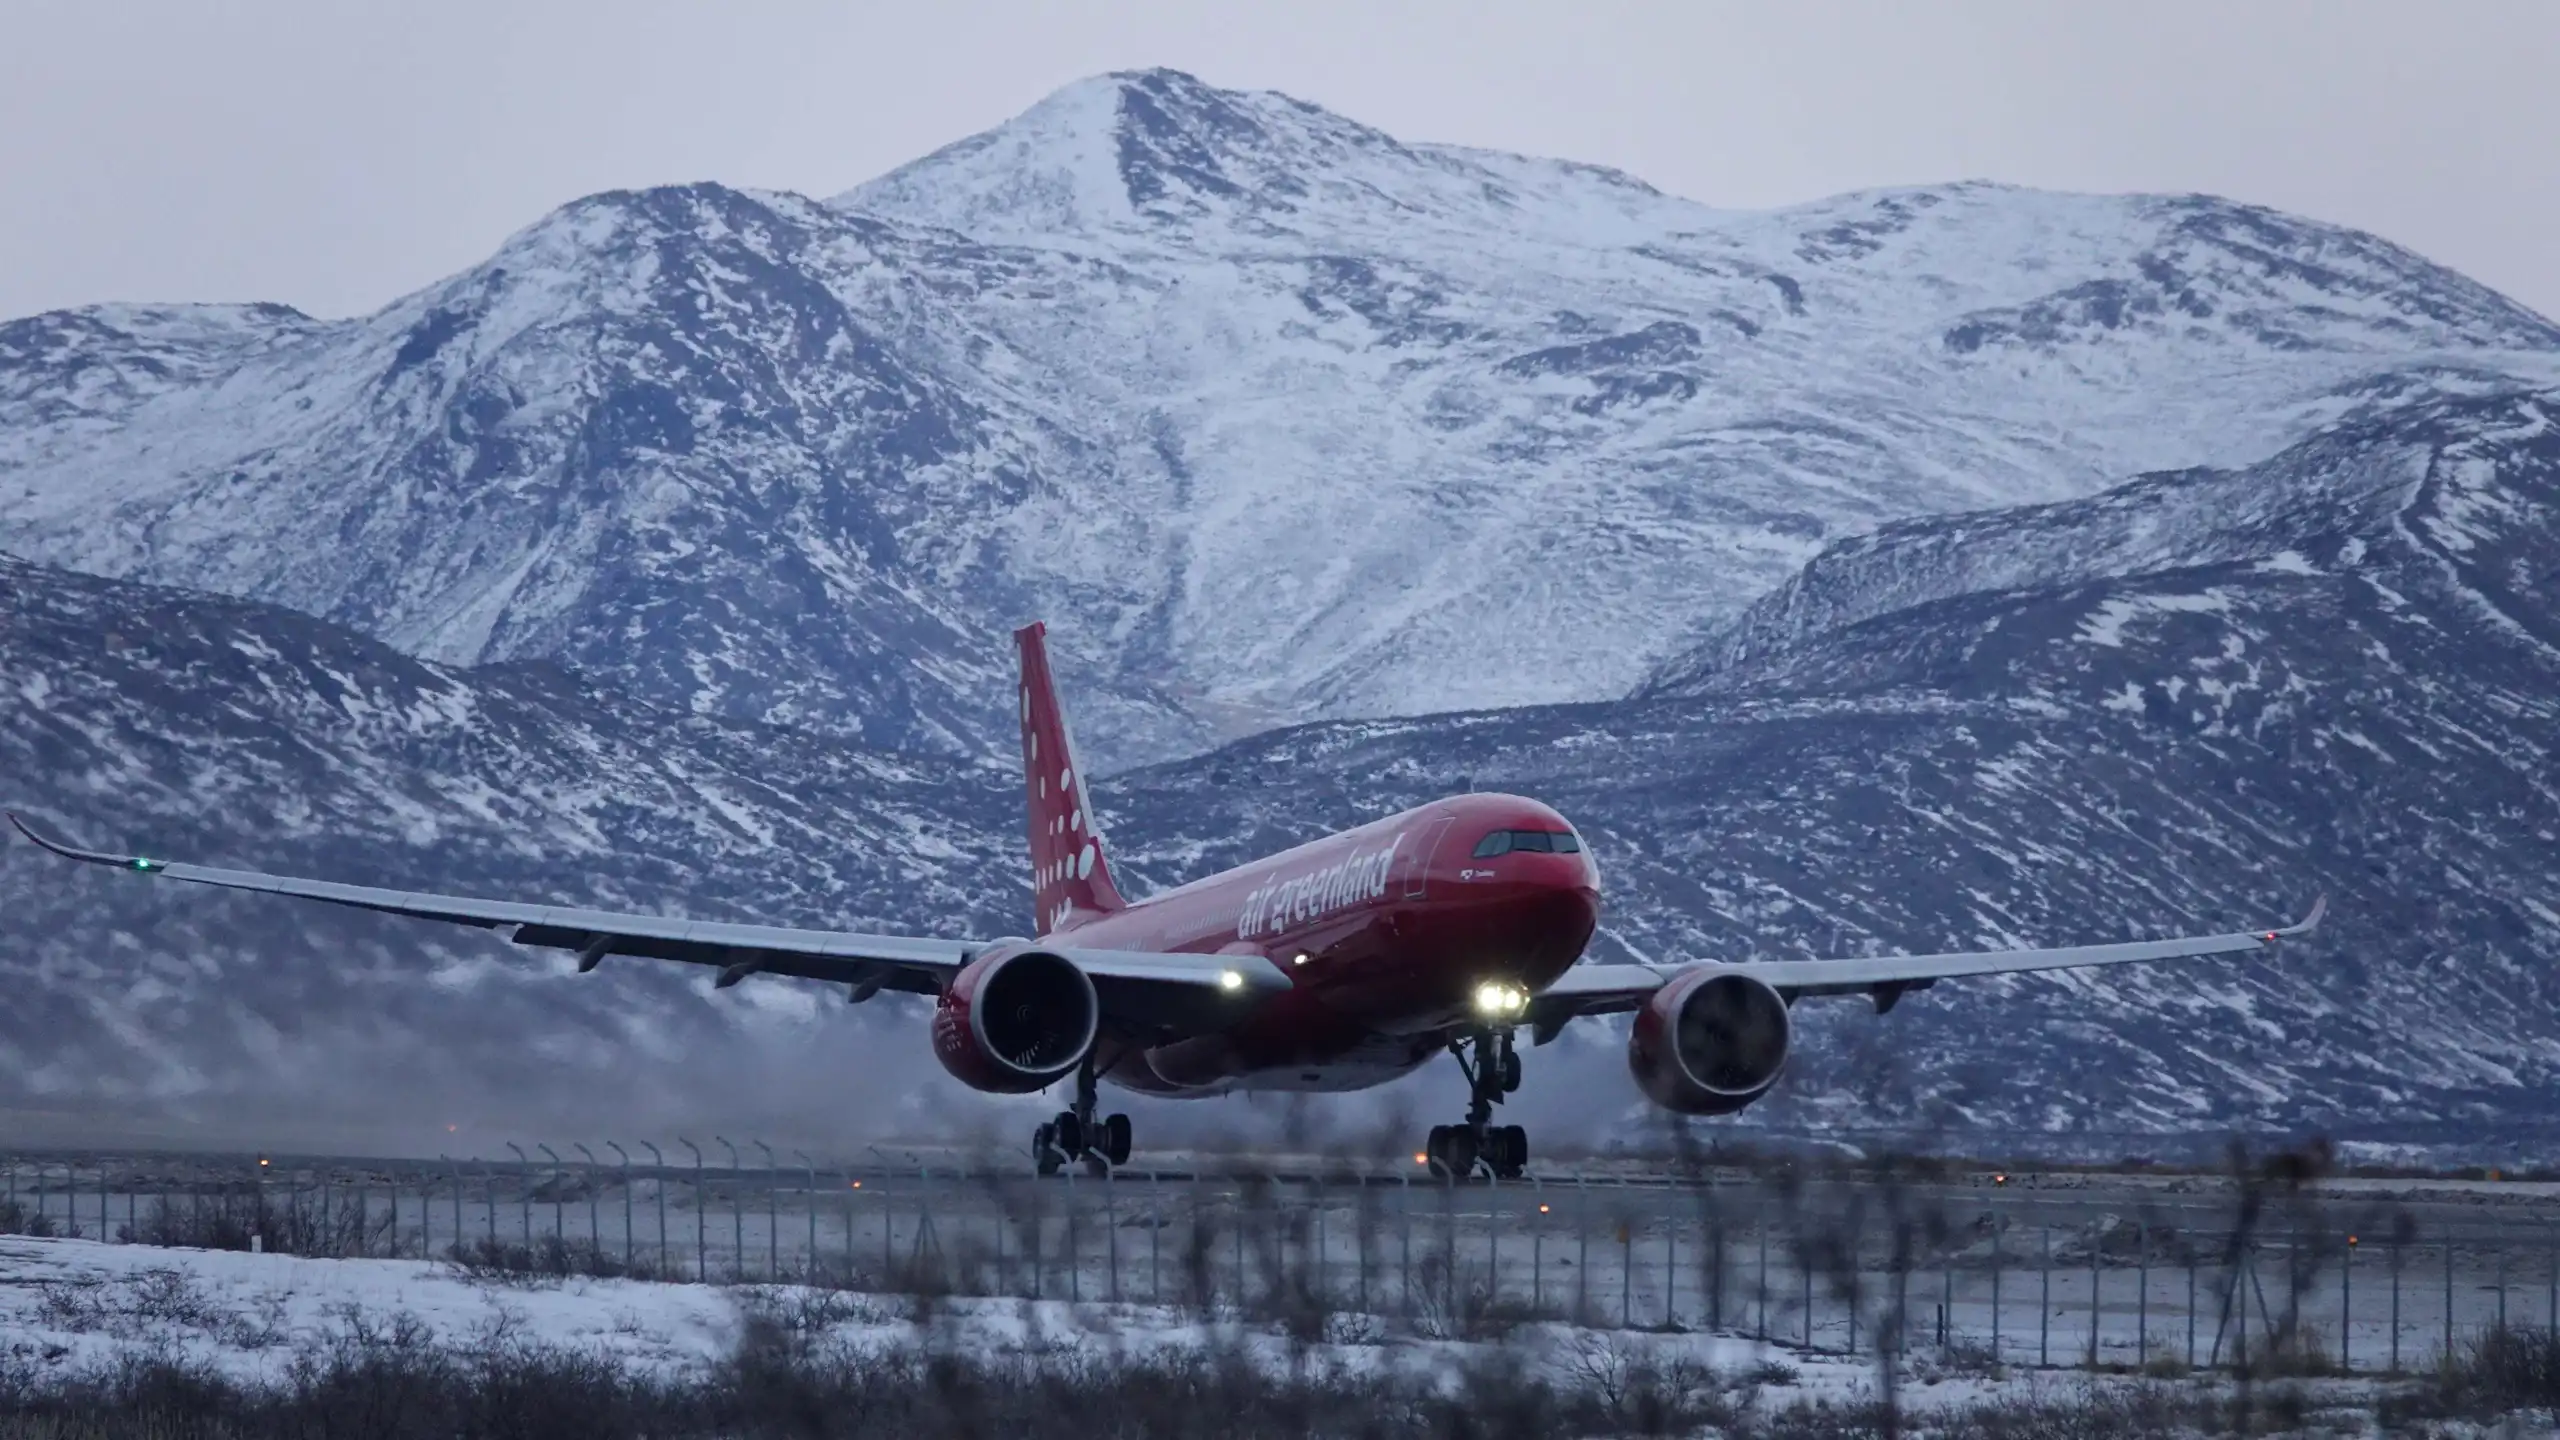 Tuukkaq flyver hjemmepublikum direkte til Stavanger i Norge den 27. november. Foto: Kim Davidsen